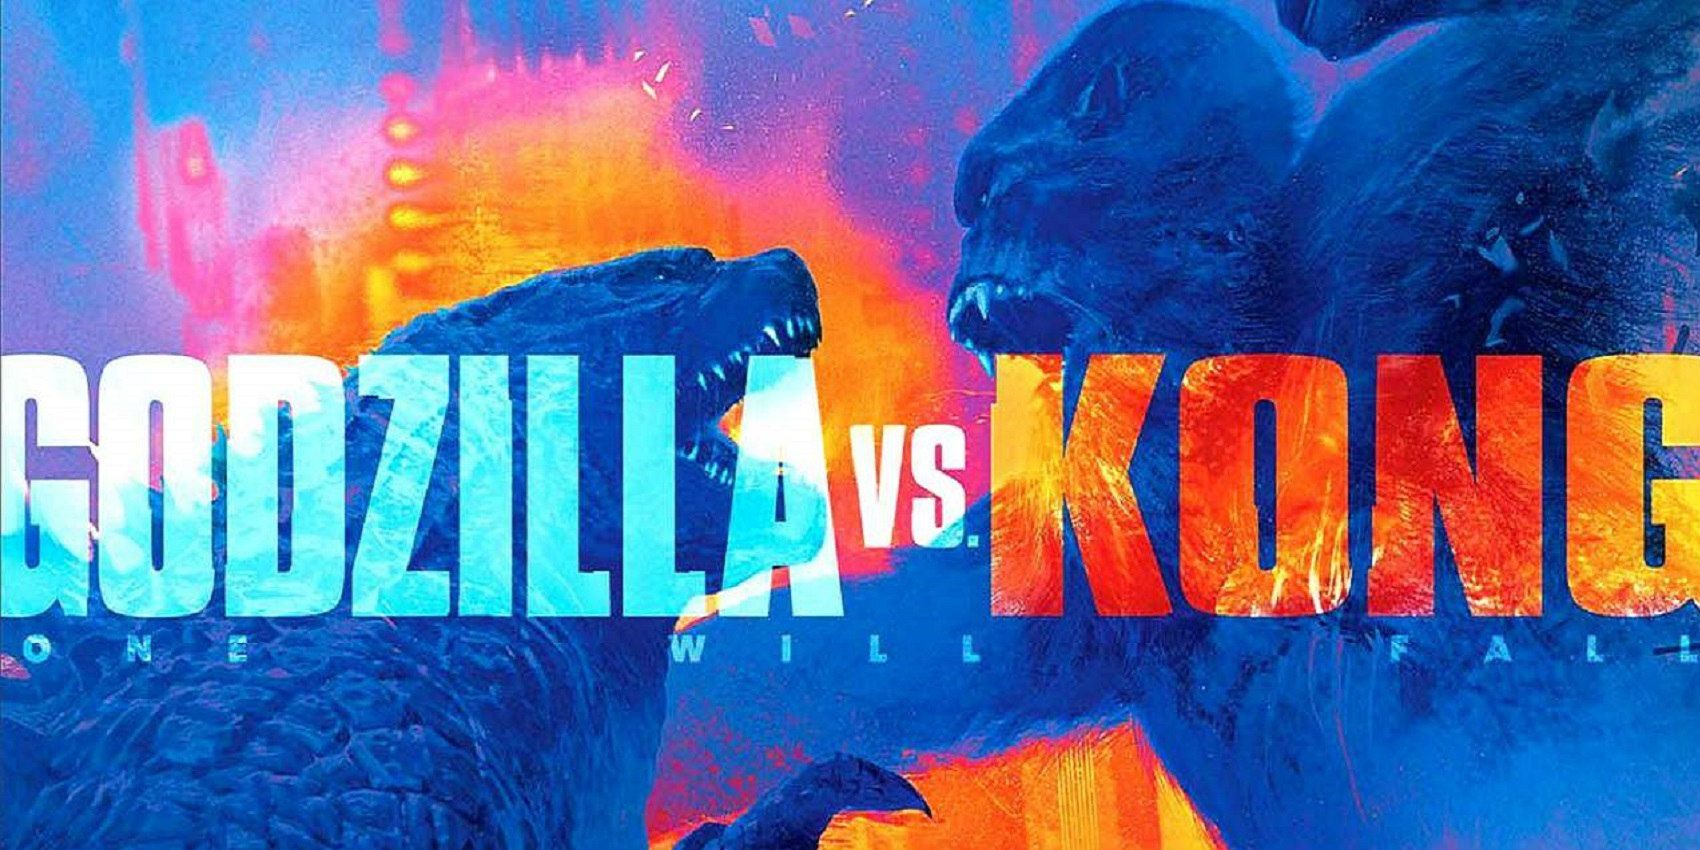 Godzilla vs. Kong has been delayed to May 21, 2020